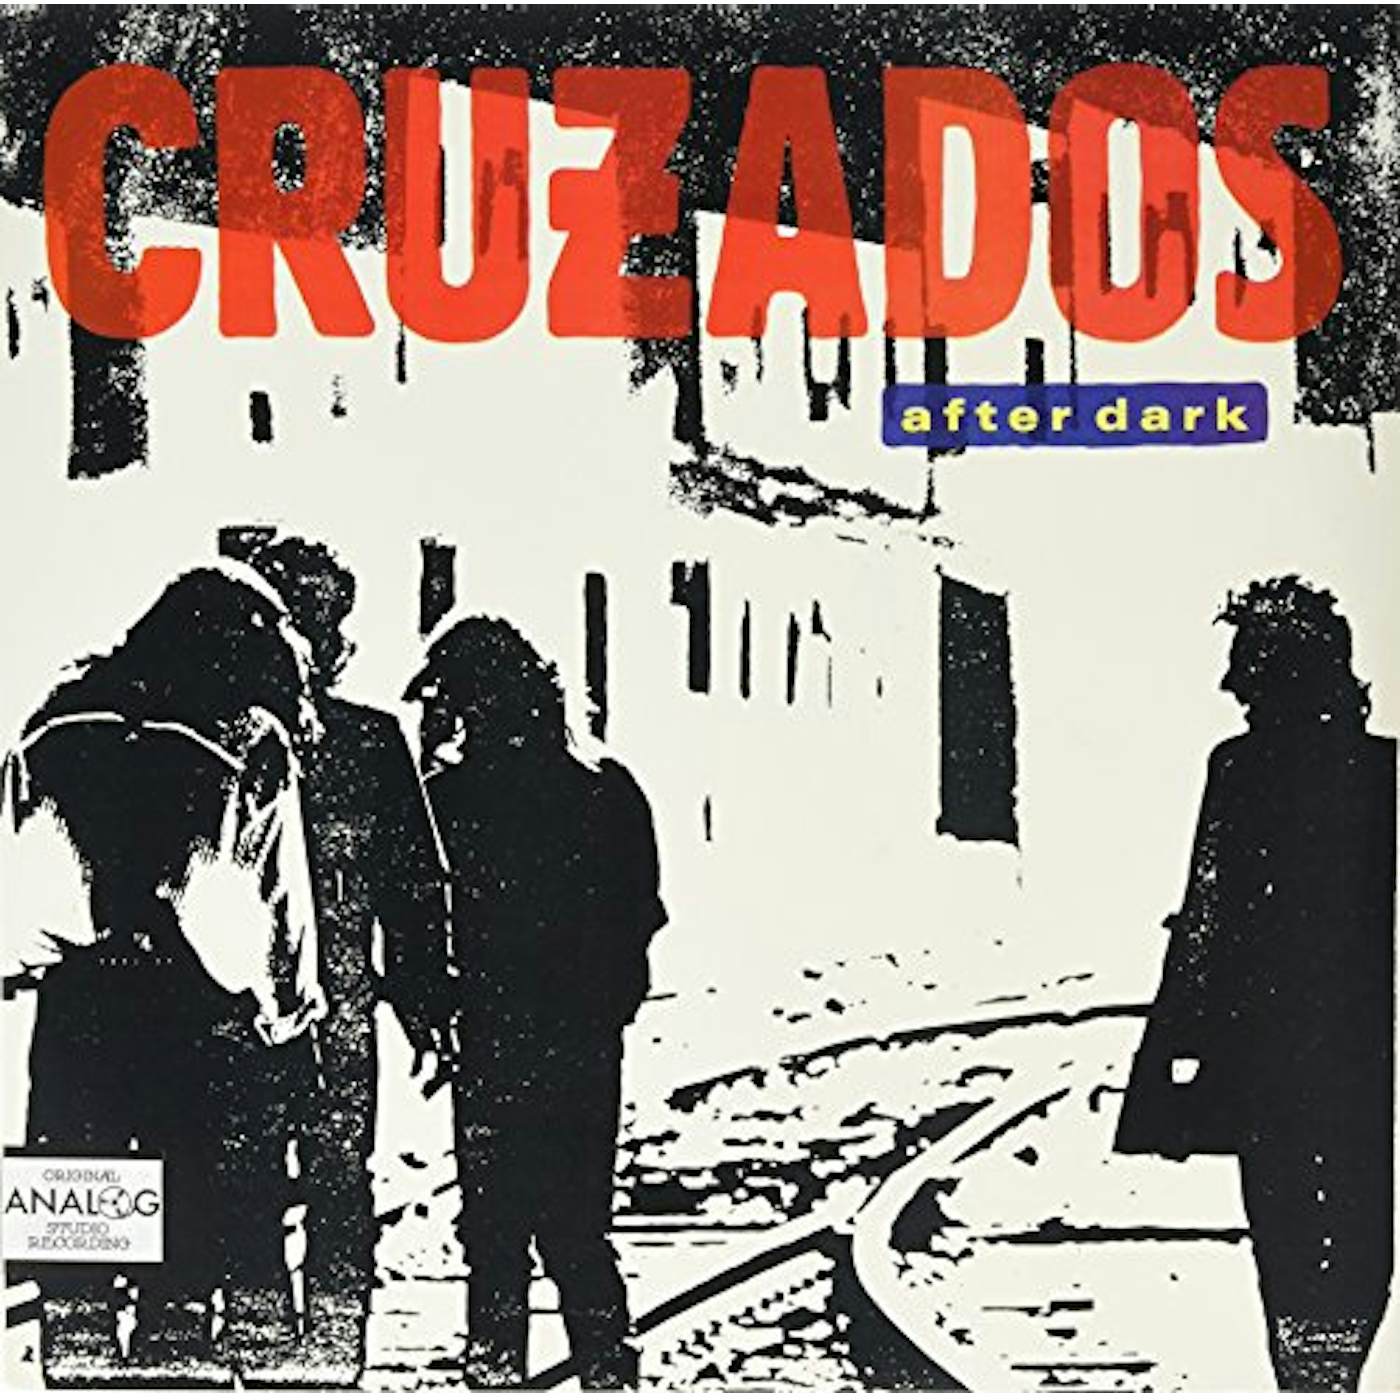 Cruzados After Dark Vinyl Record